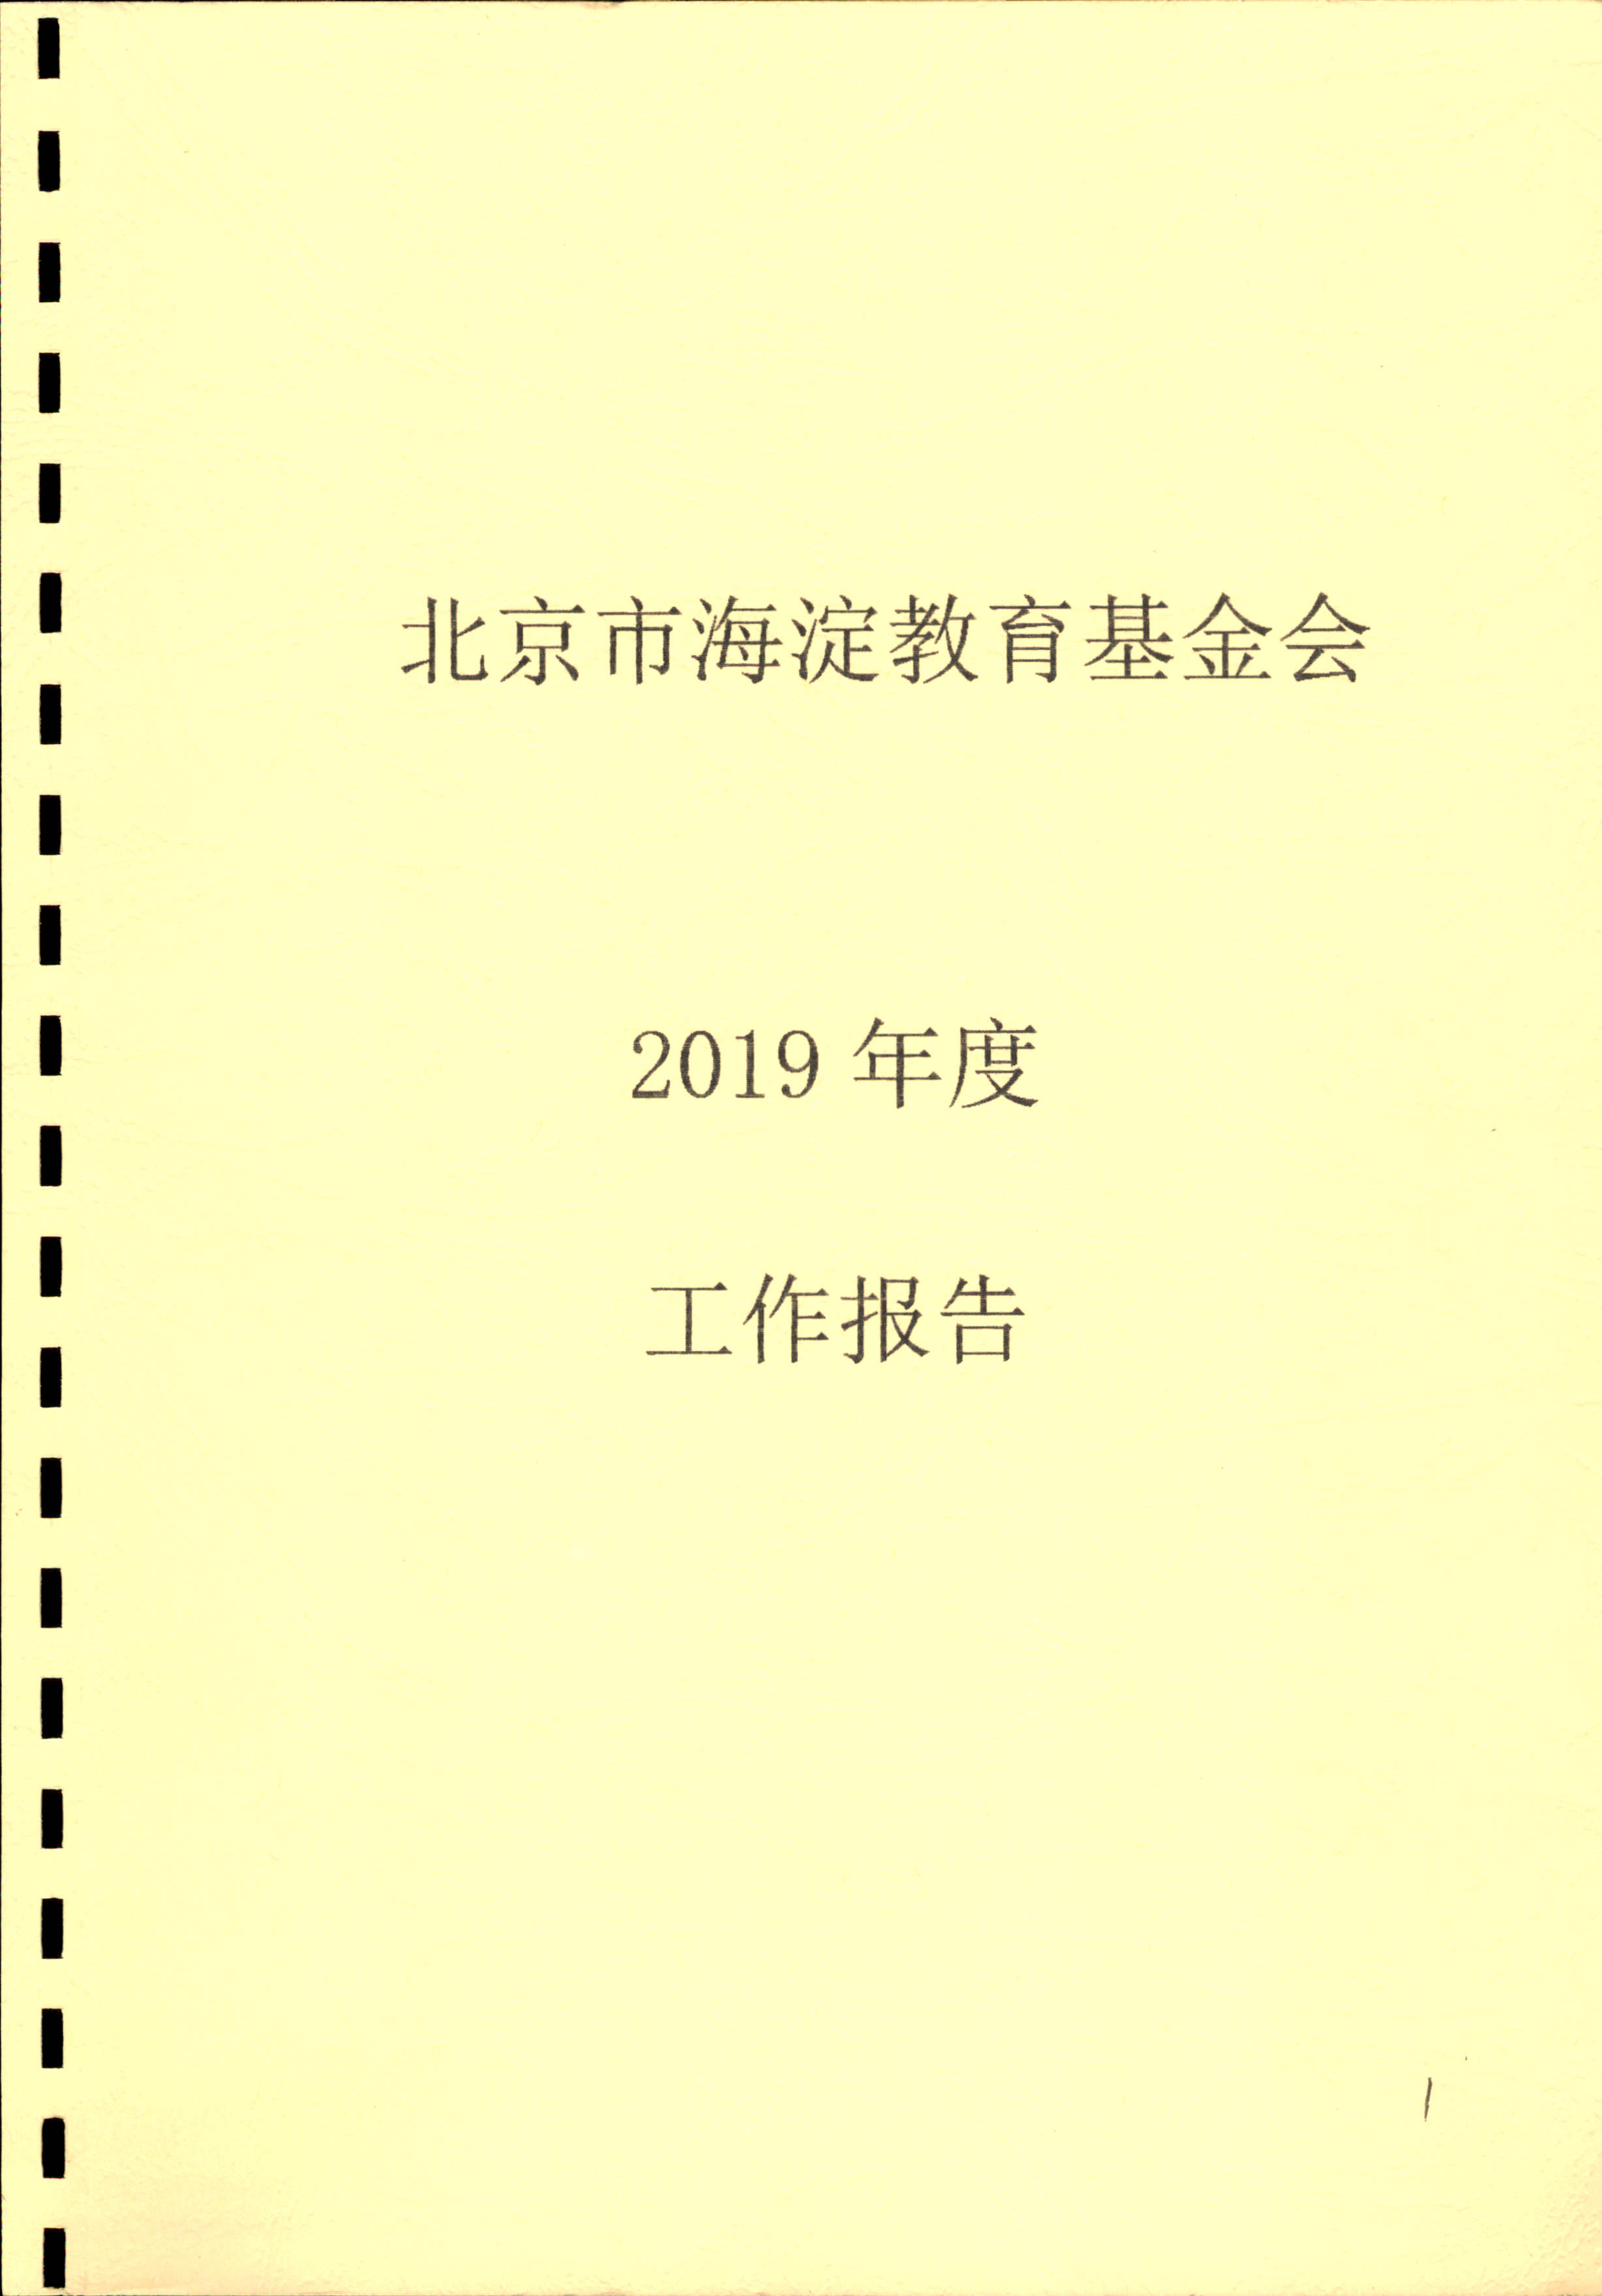 北京市海淀教育基金会2019年工作报告